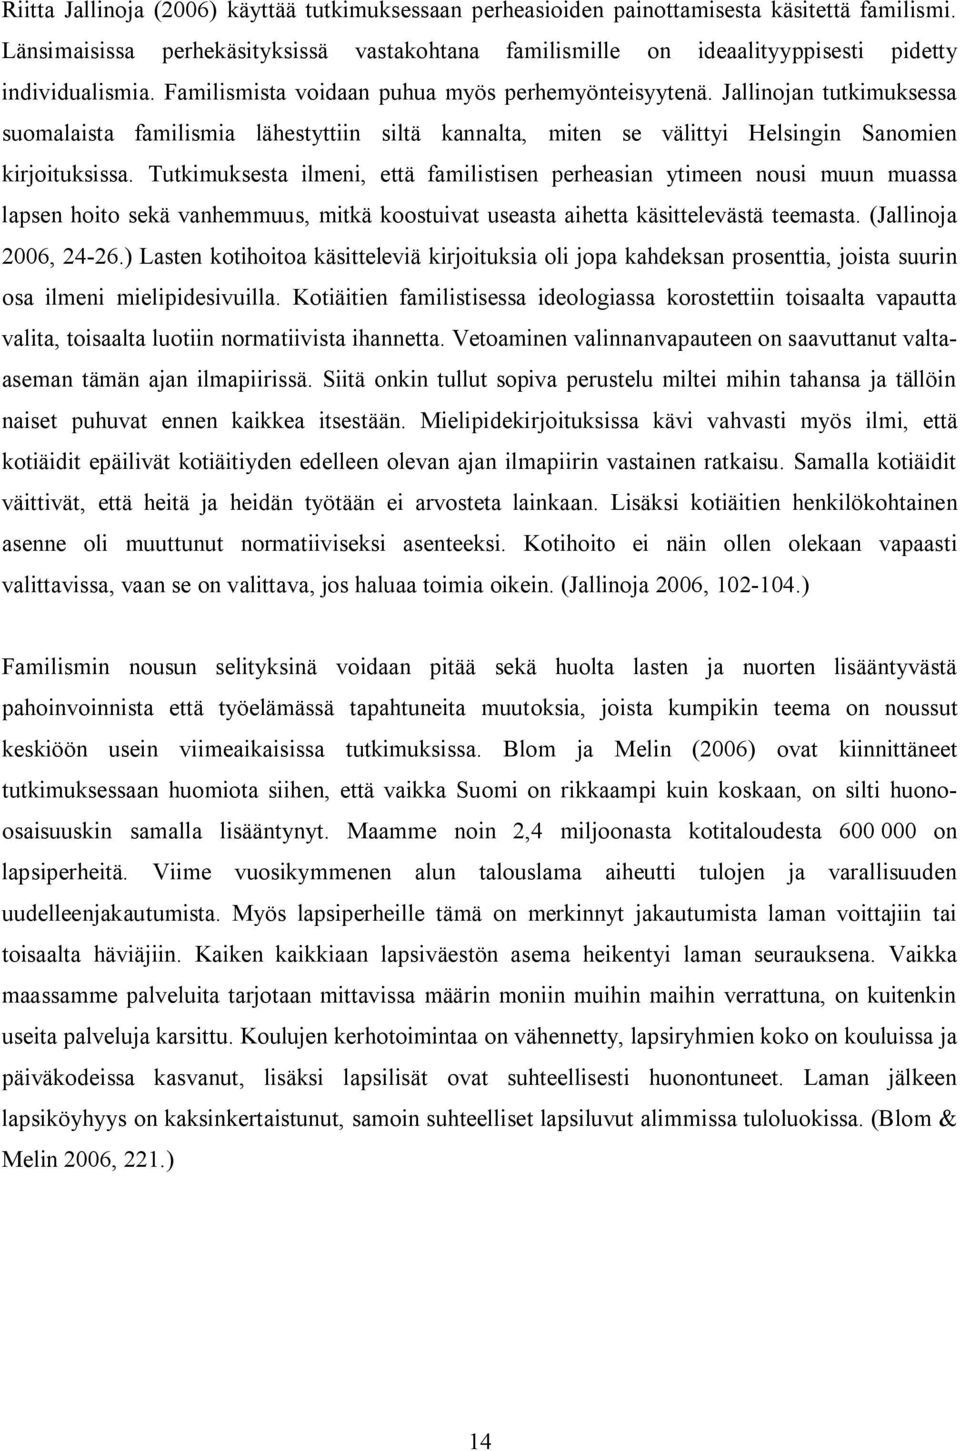 Jallinojan tutkimuksessa suomalaista familismia lähestyttiin siltä kannalta, miten se välittyi Helsingin Sanomien kirjoituksissa.